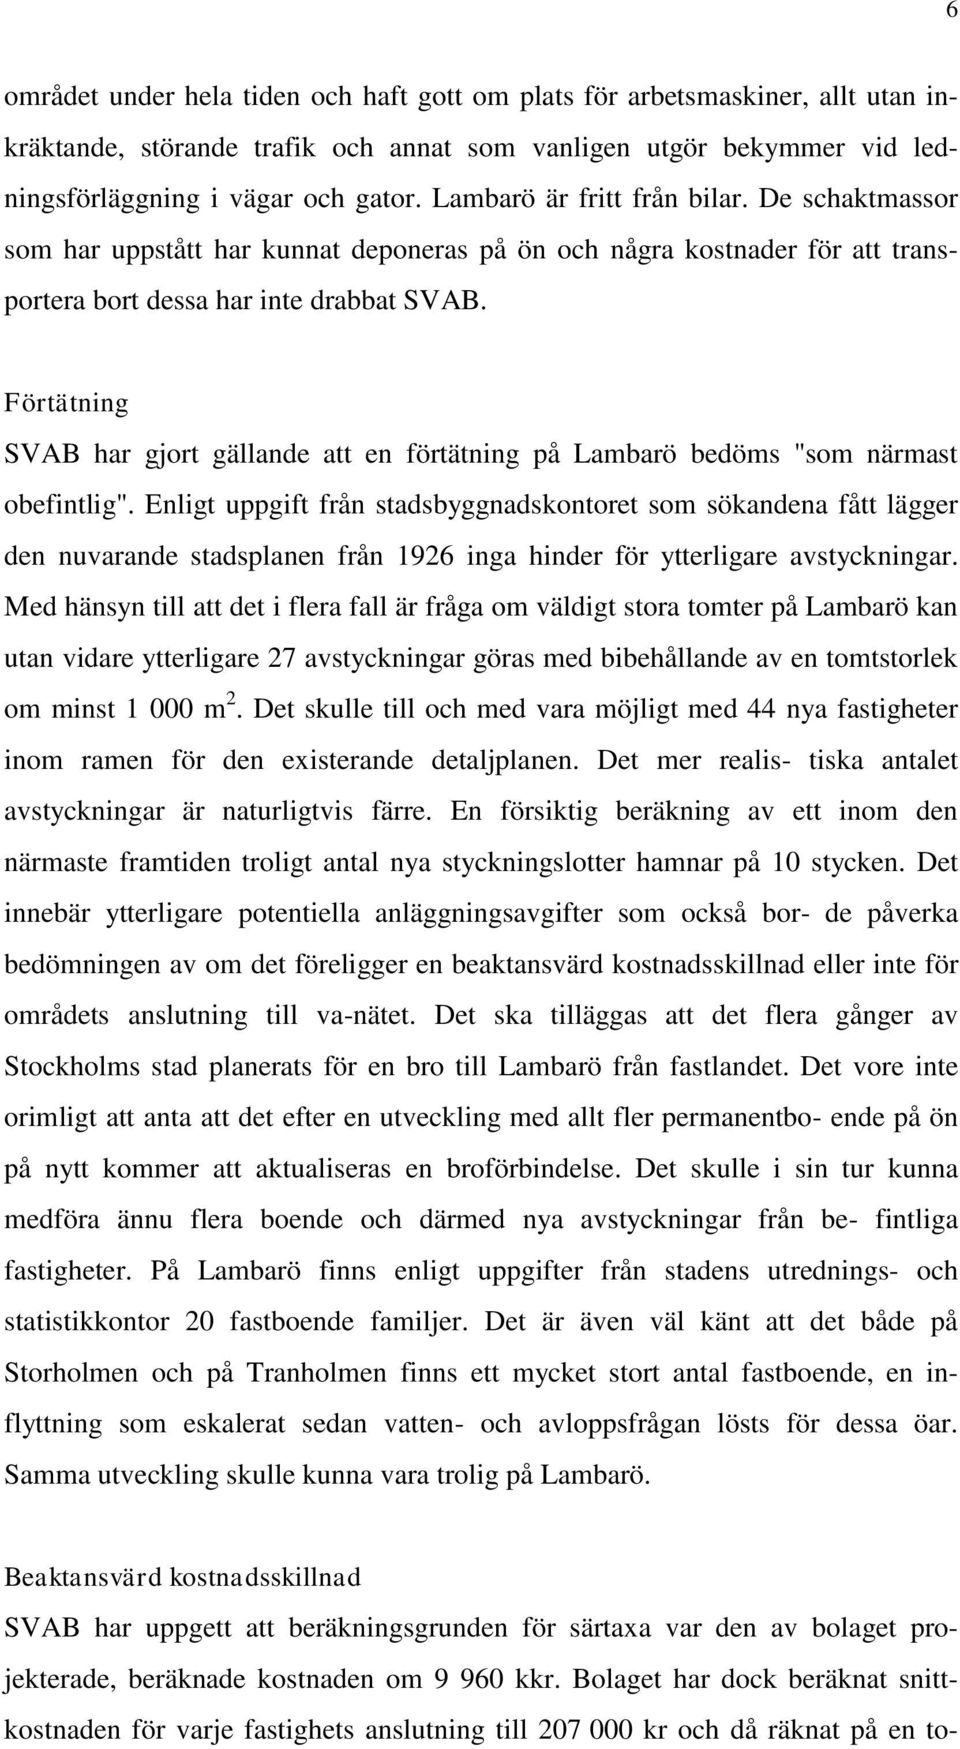 Förtätning SVAB har gjort gällande att en förtätning på Lambarö bedöms "som närmast obefintlig".